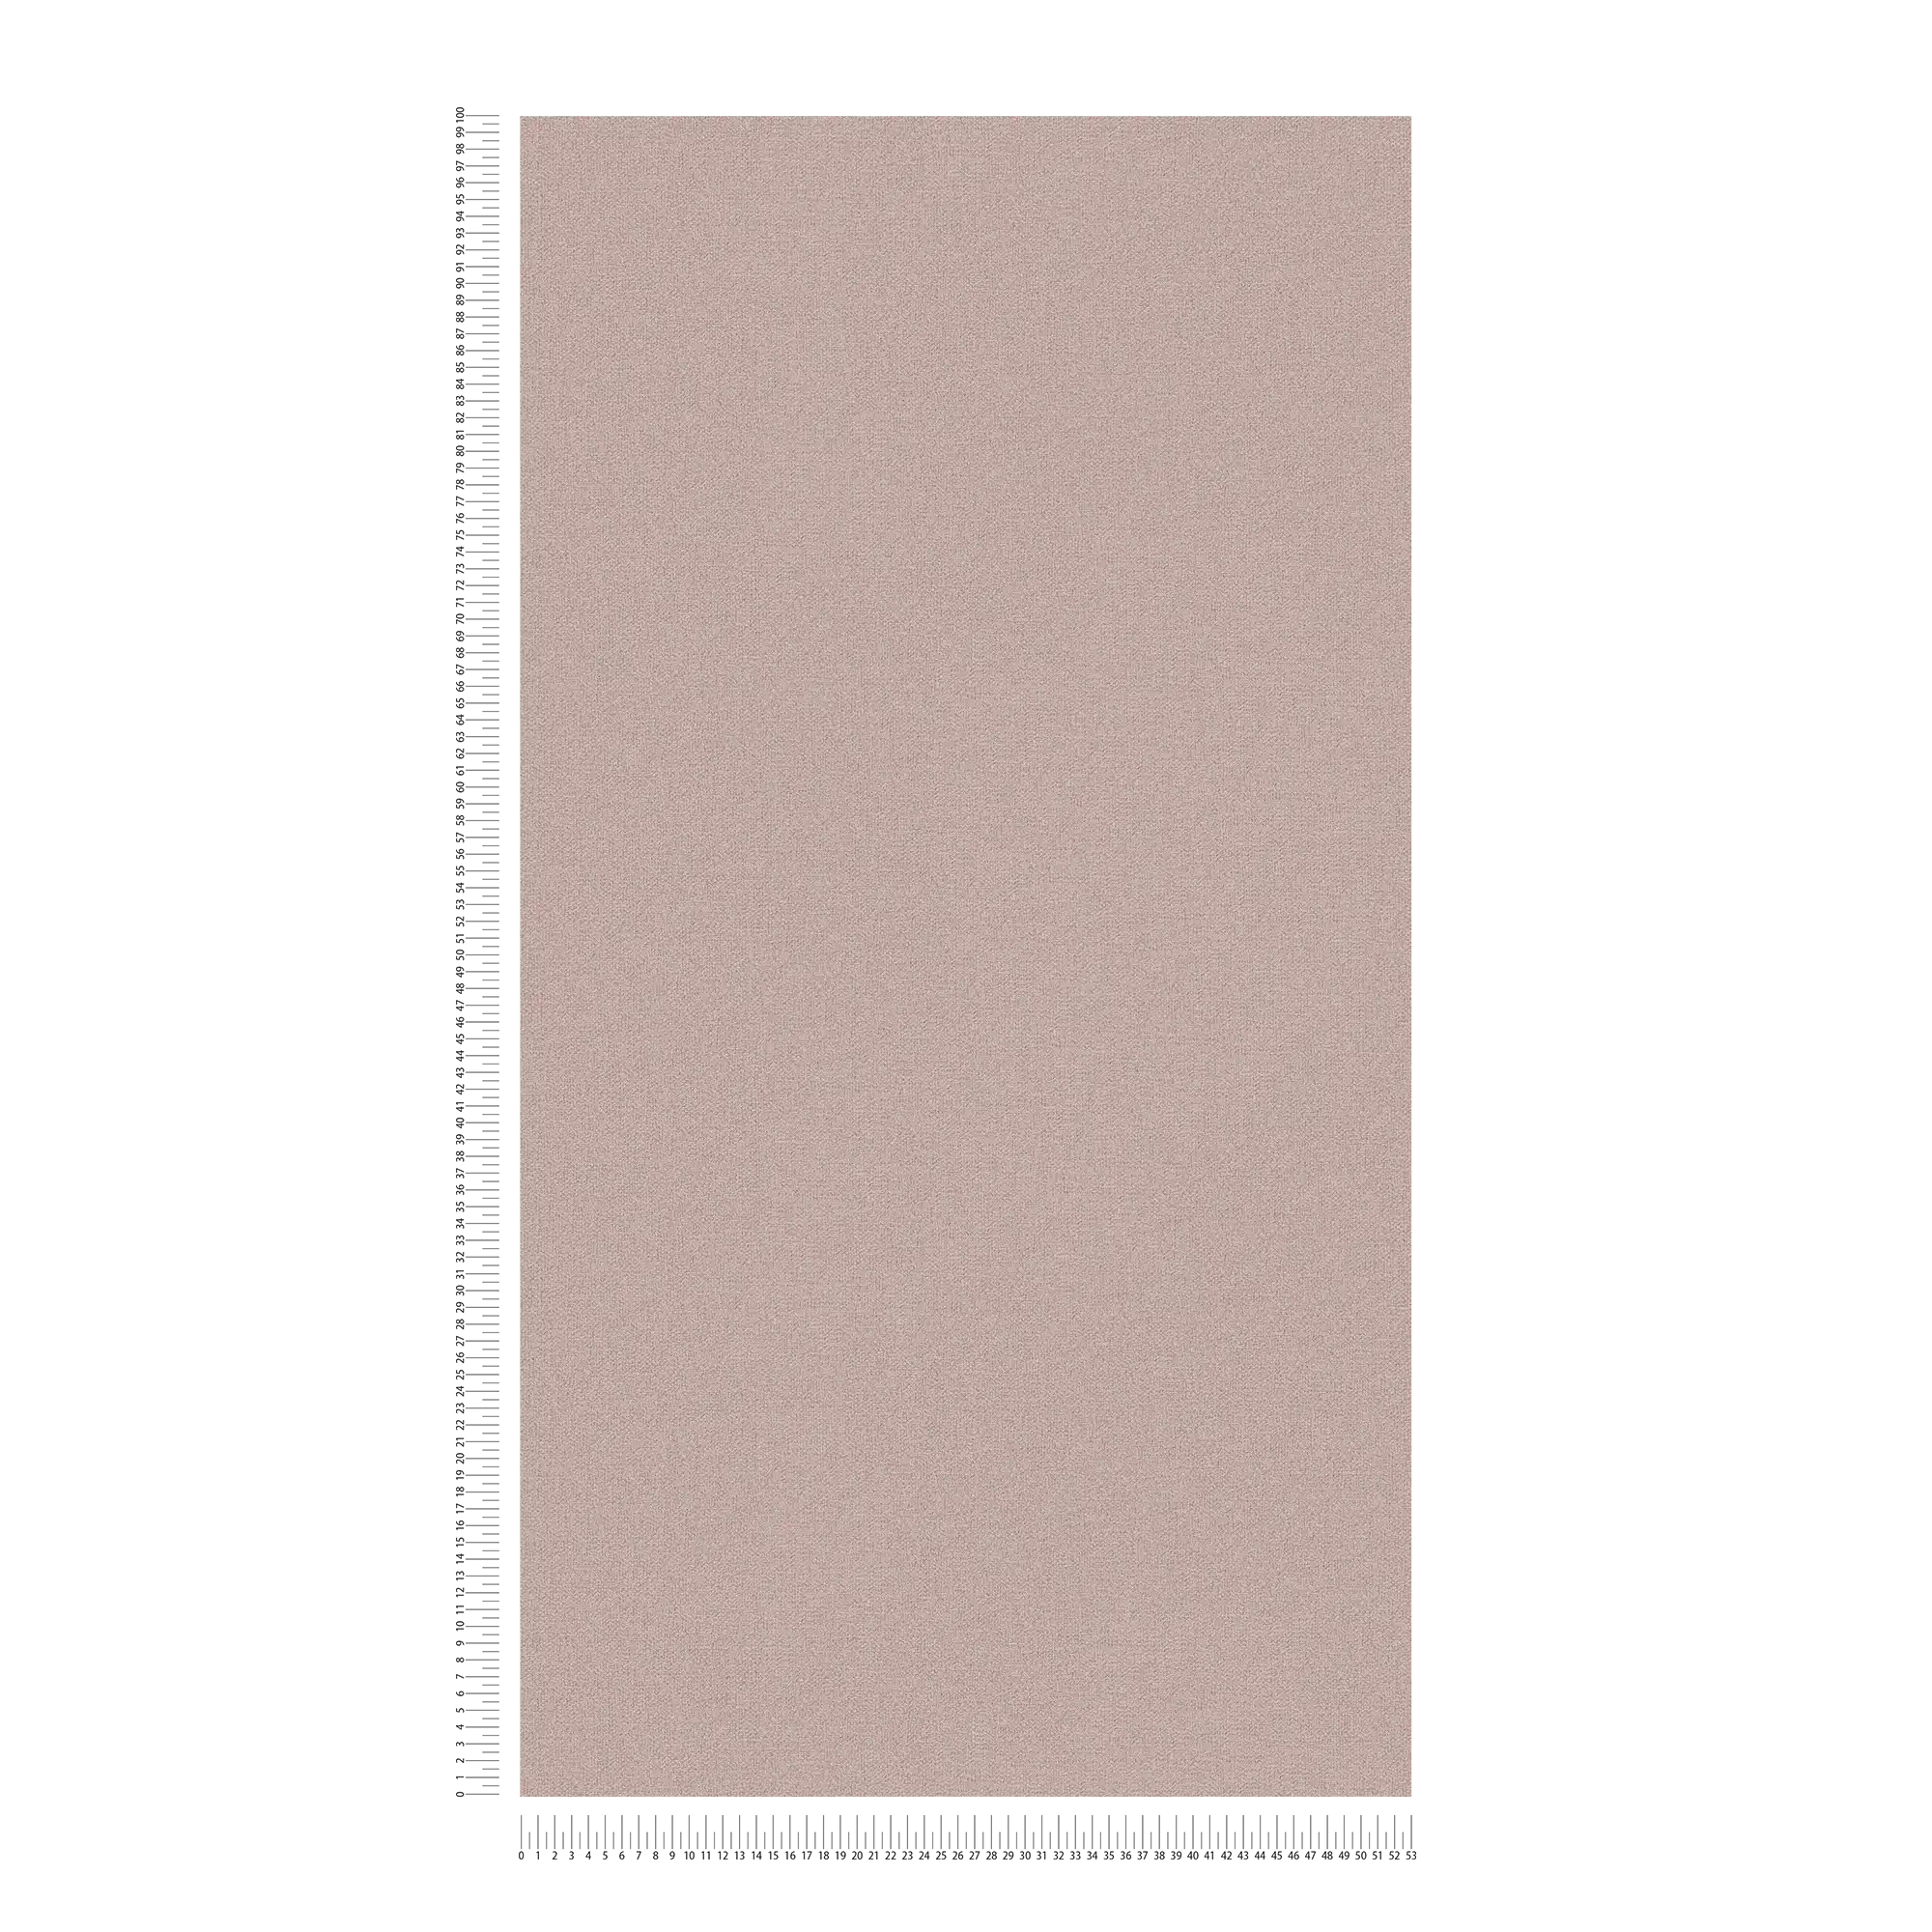             Carta da parati in tessuto non tessuto a tinta unita con struttura in lino - grigio, marrone, grigio
        